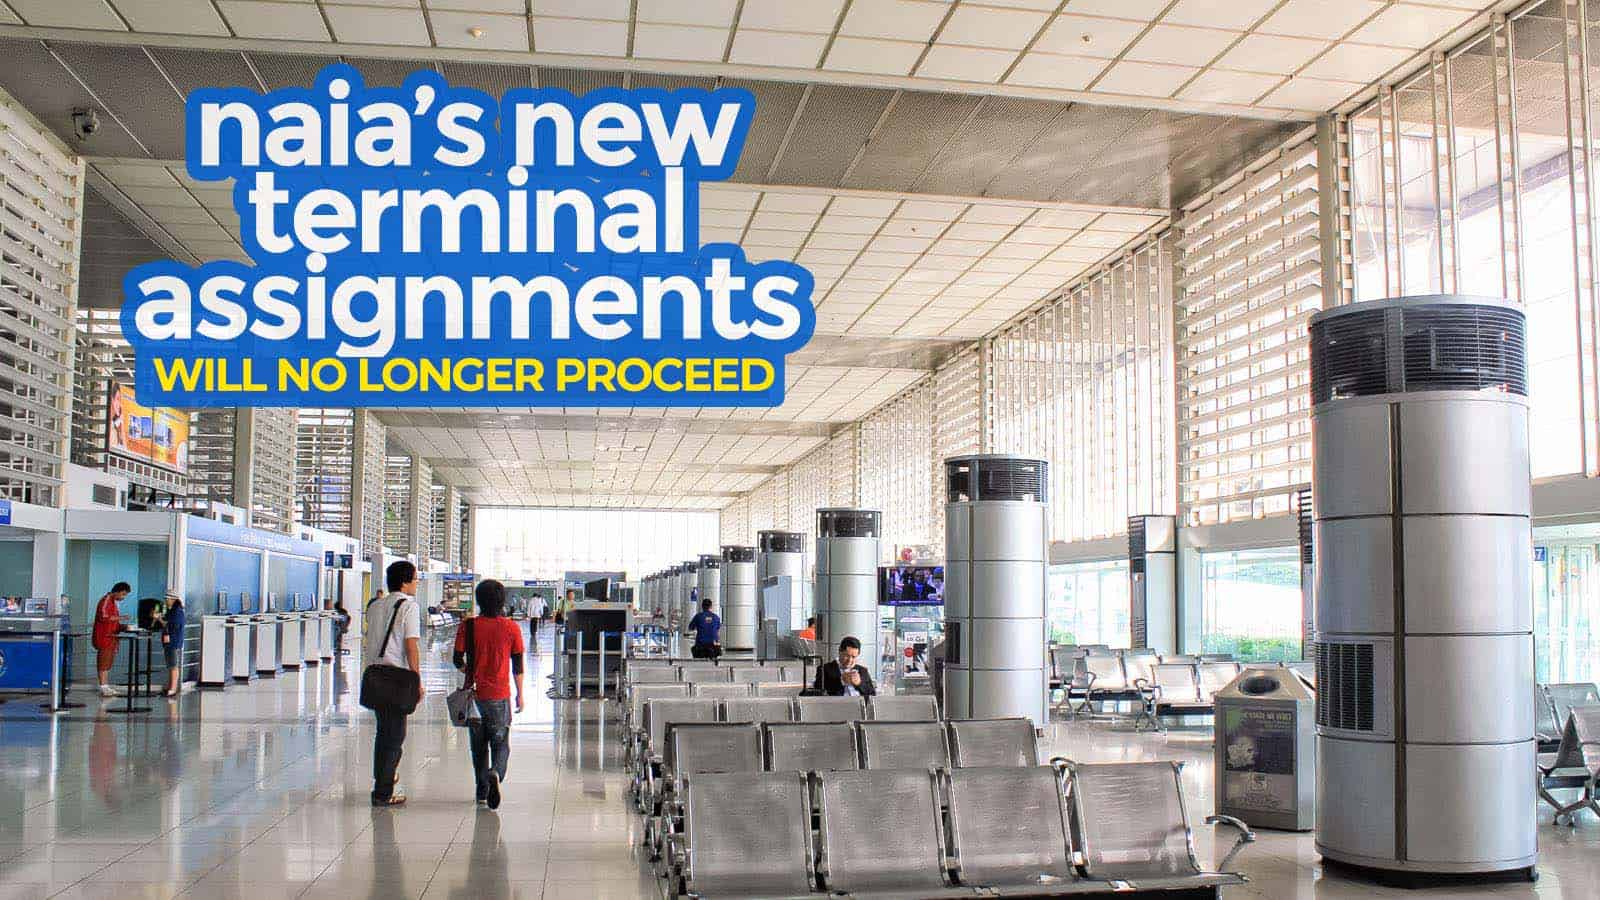 马尼拉机场:新的NAIA候机楼分配将不再进行